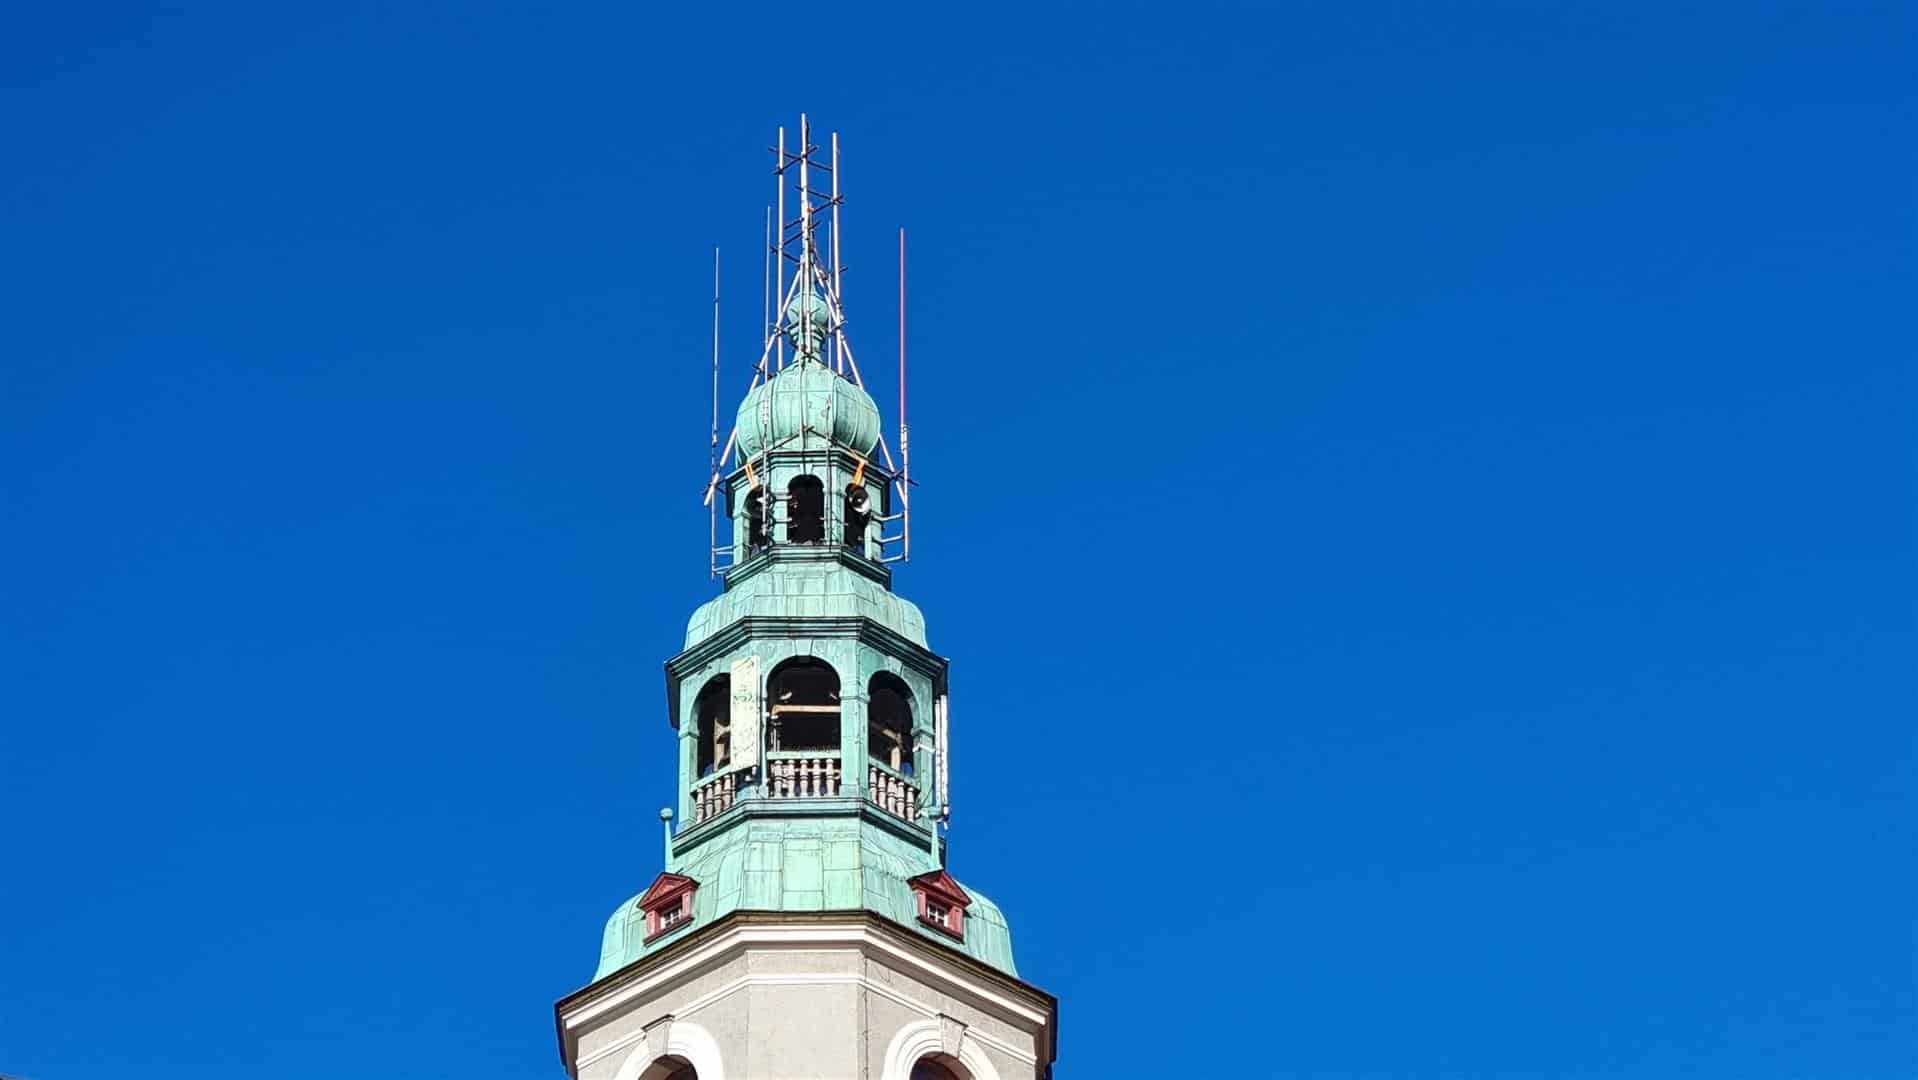 Kto naprawi iglicę ratuszowej wieży? nieruchomości Olsztyn, Wiadomości